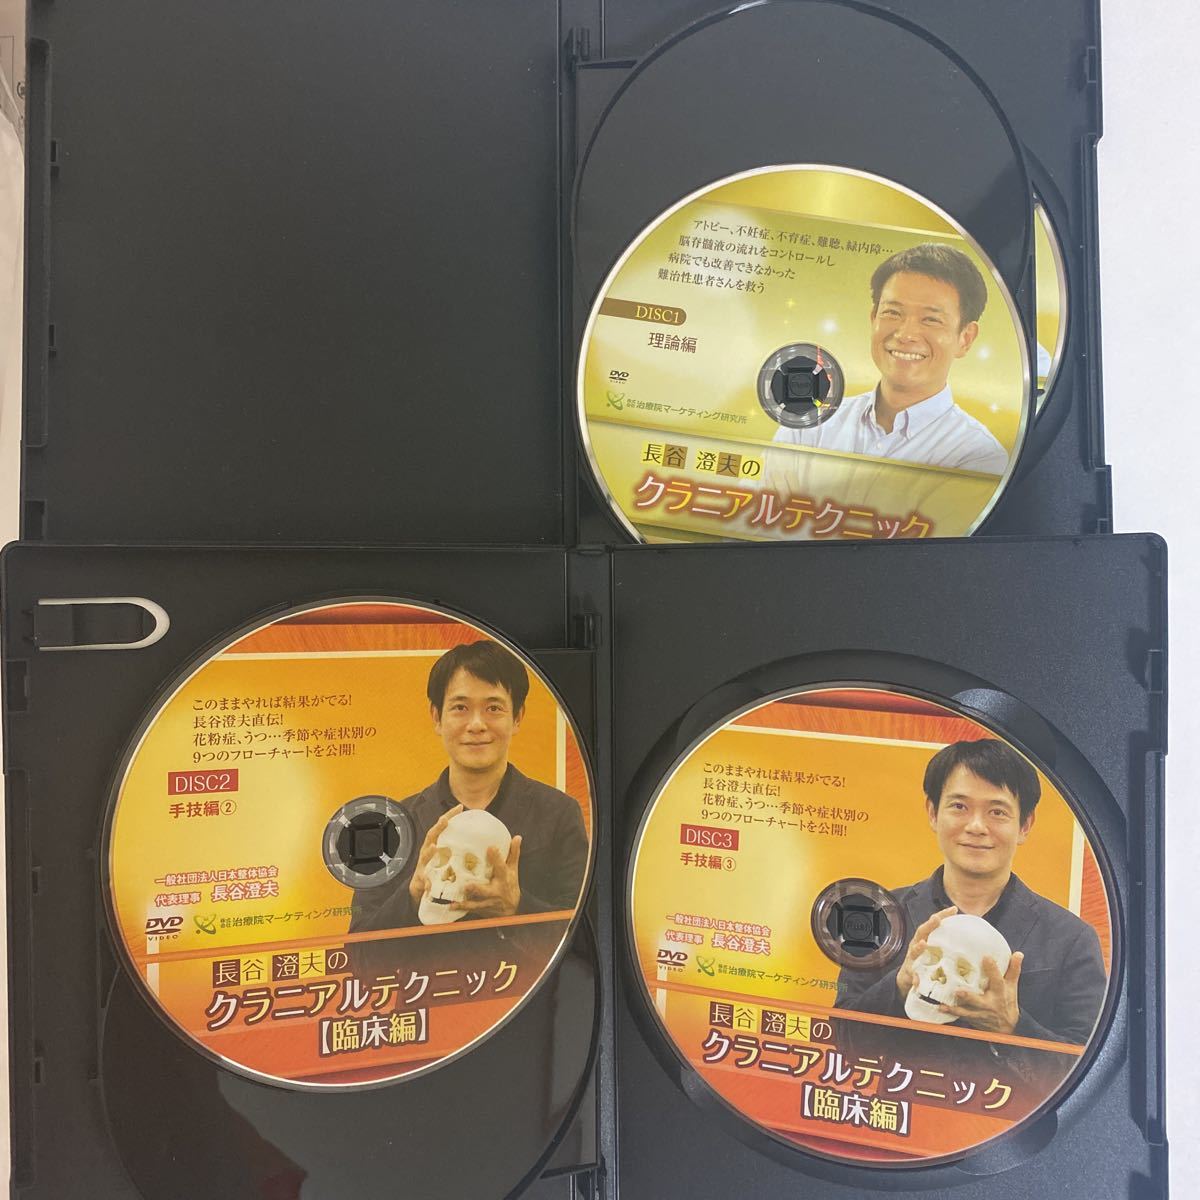 整体 DVD 4種類 長谷澄夫 内臓 クラニアル 和整體 国際整体協会-